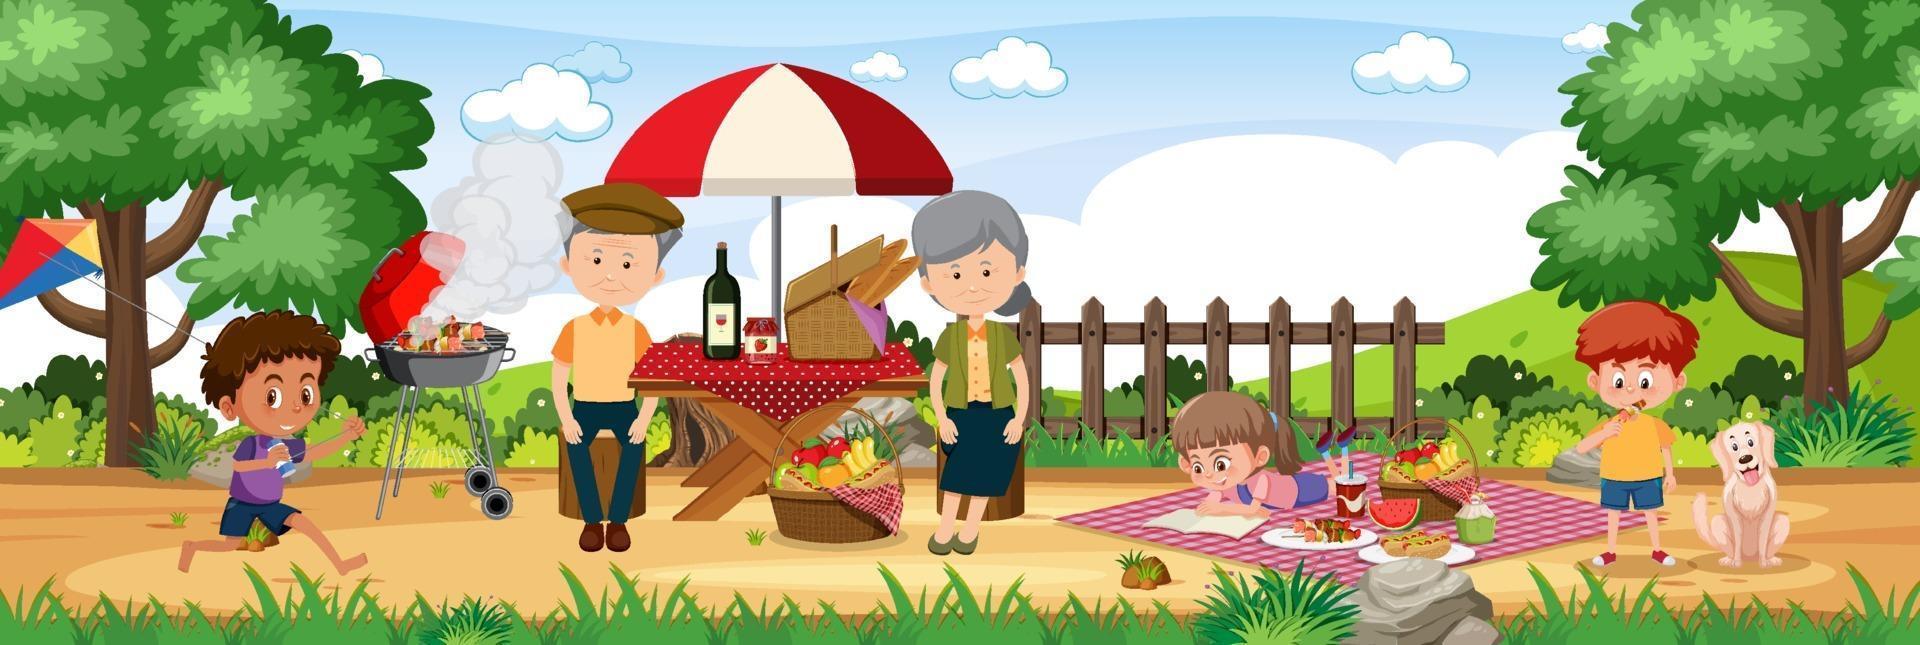 Picknick-Outdoor-Szene mit glücklicher Familie vektor